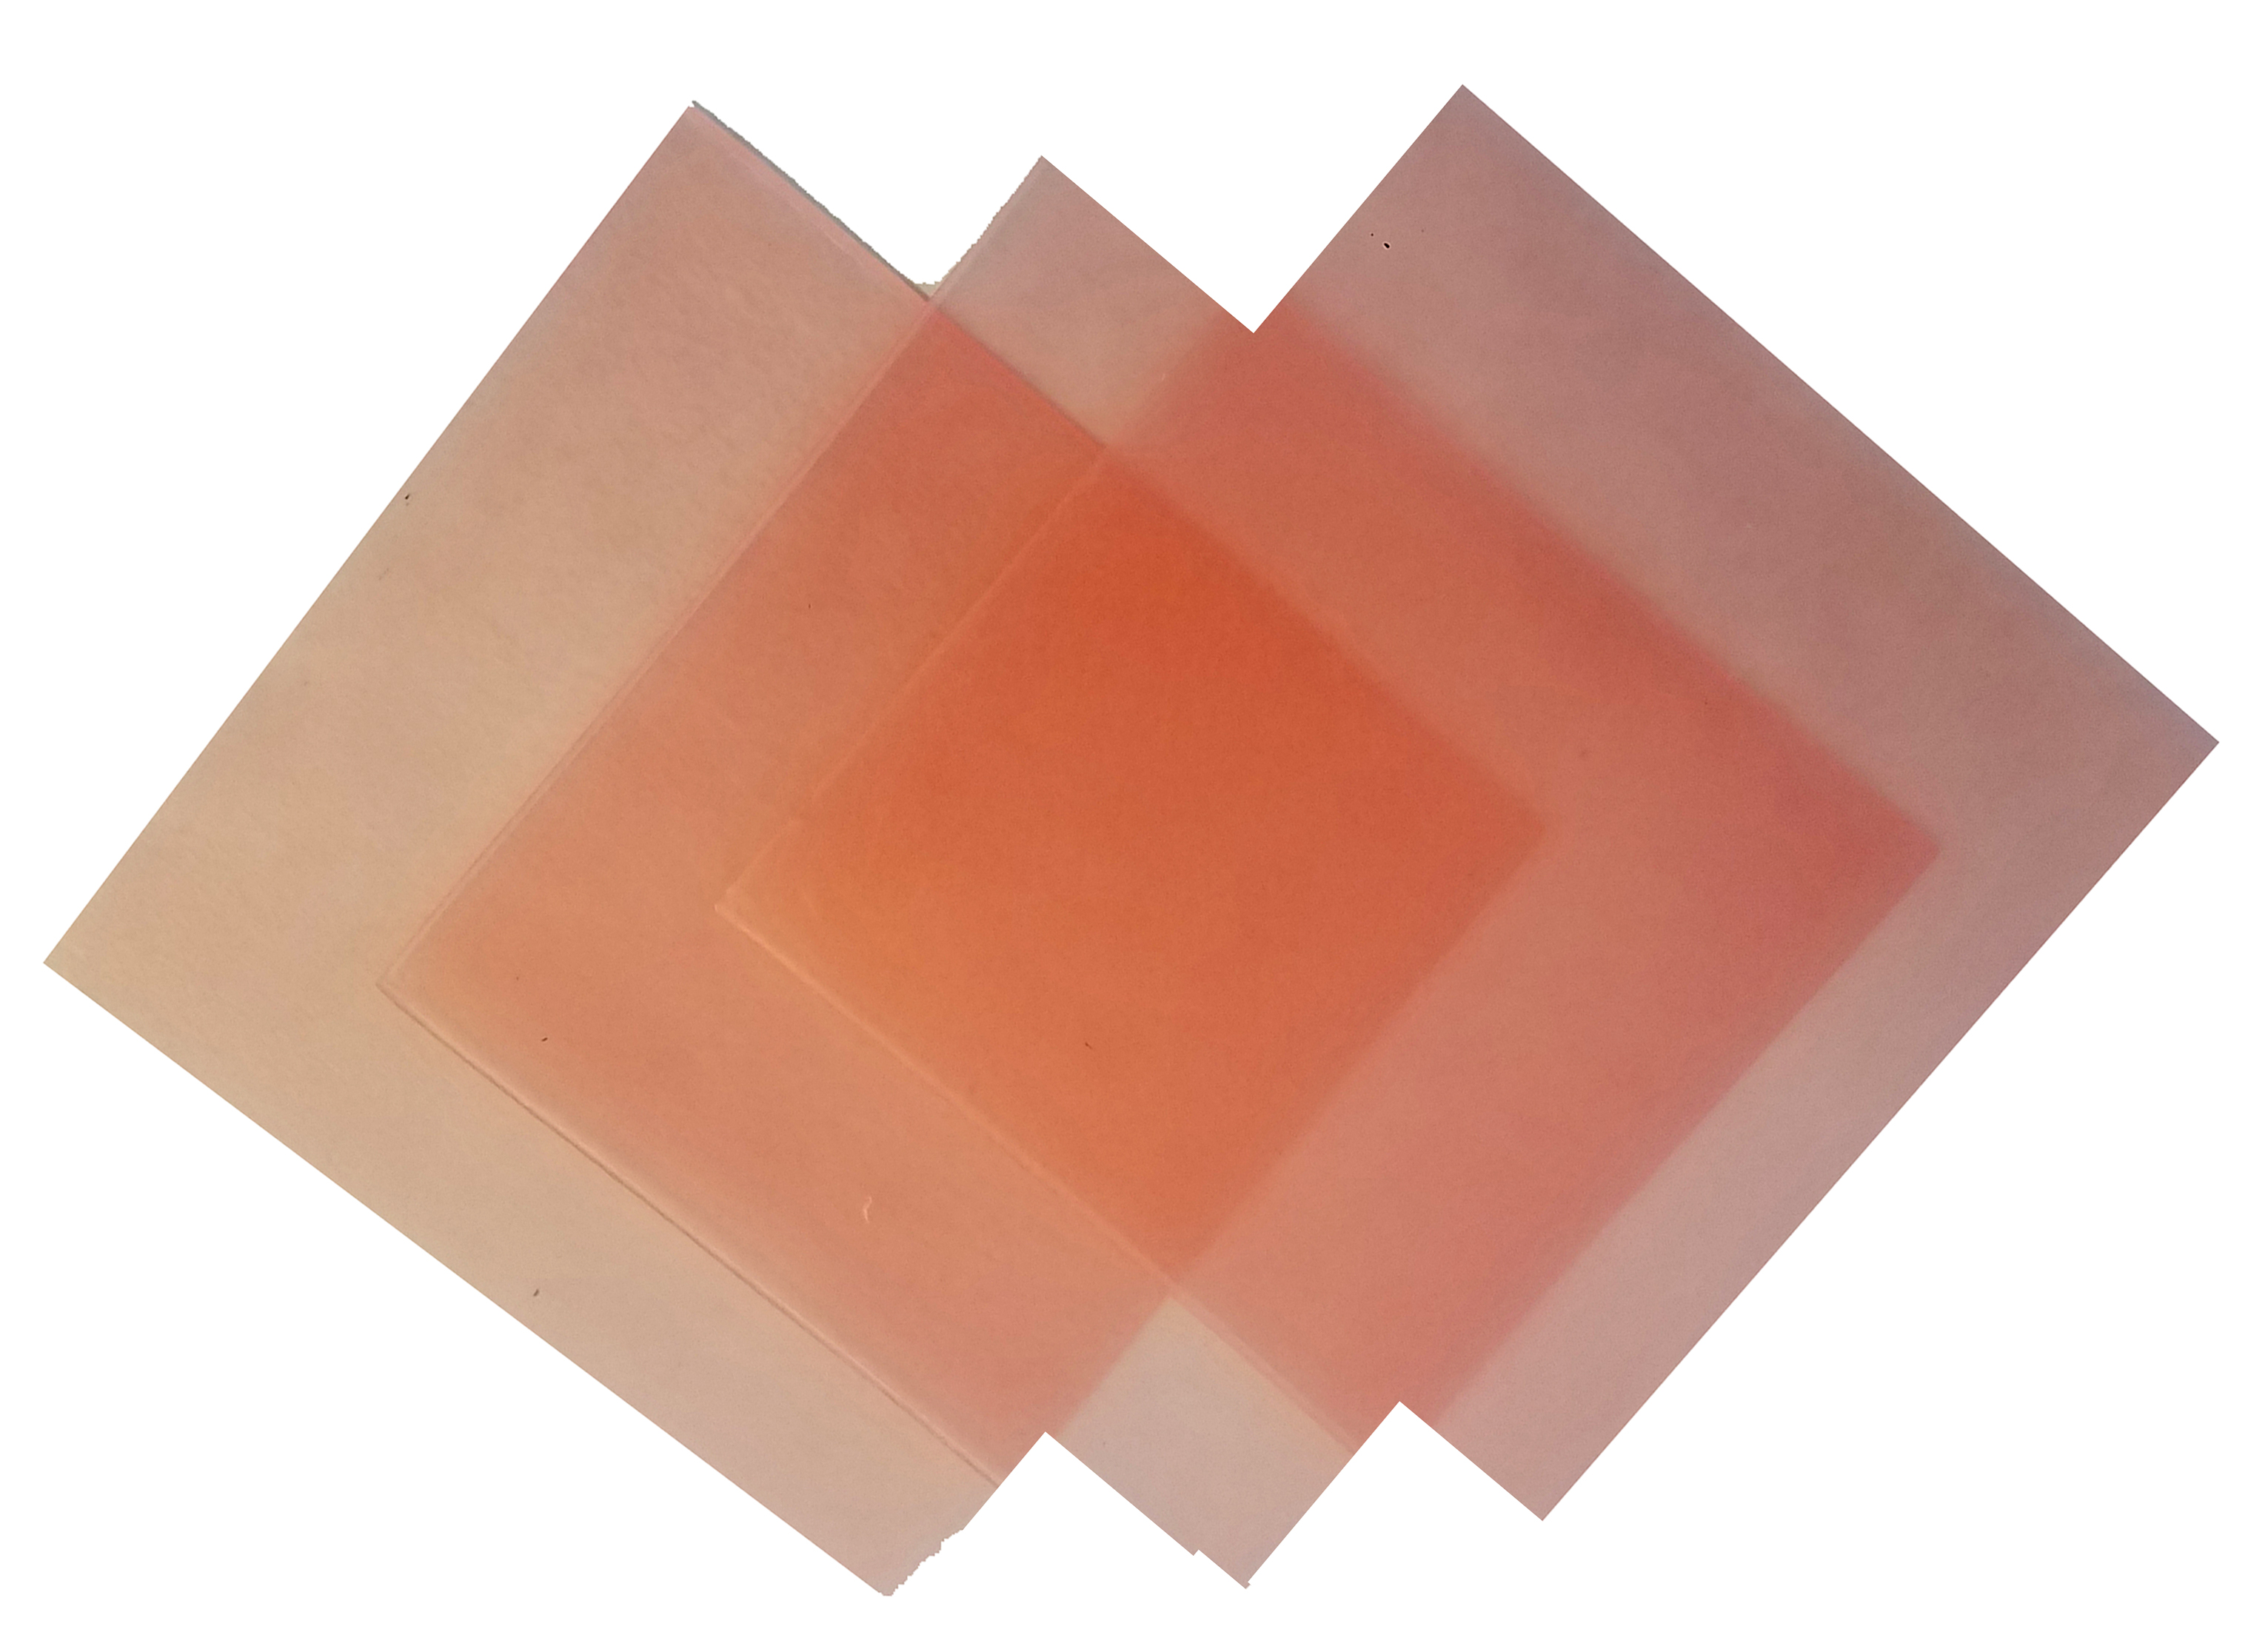 4"x4" sheet wax 23 gauge pink